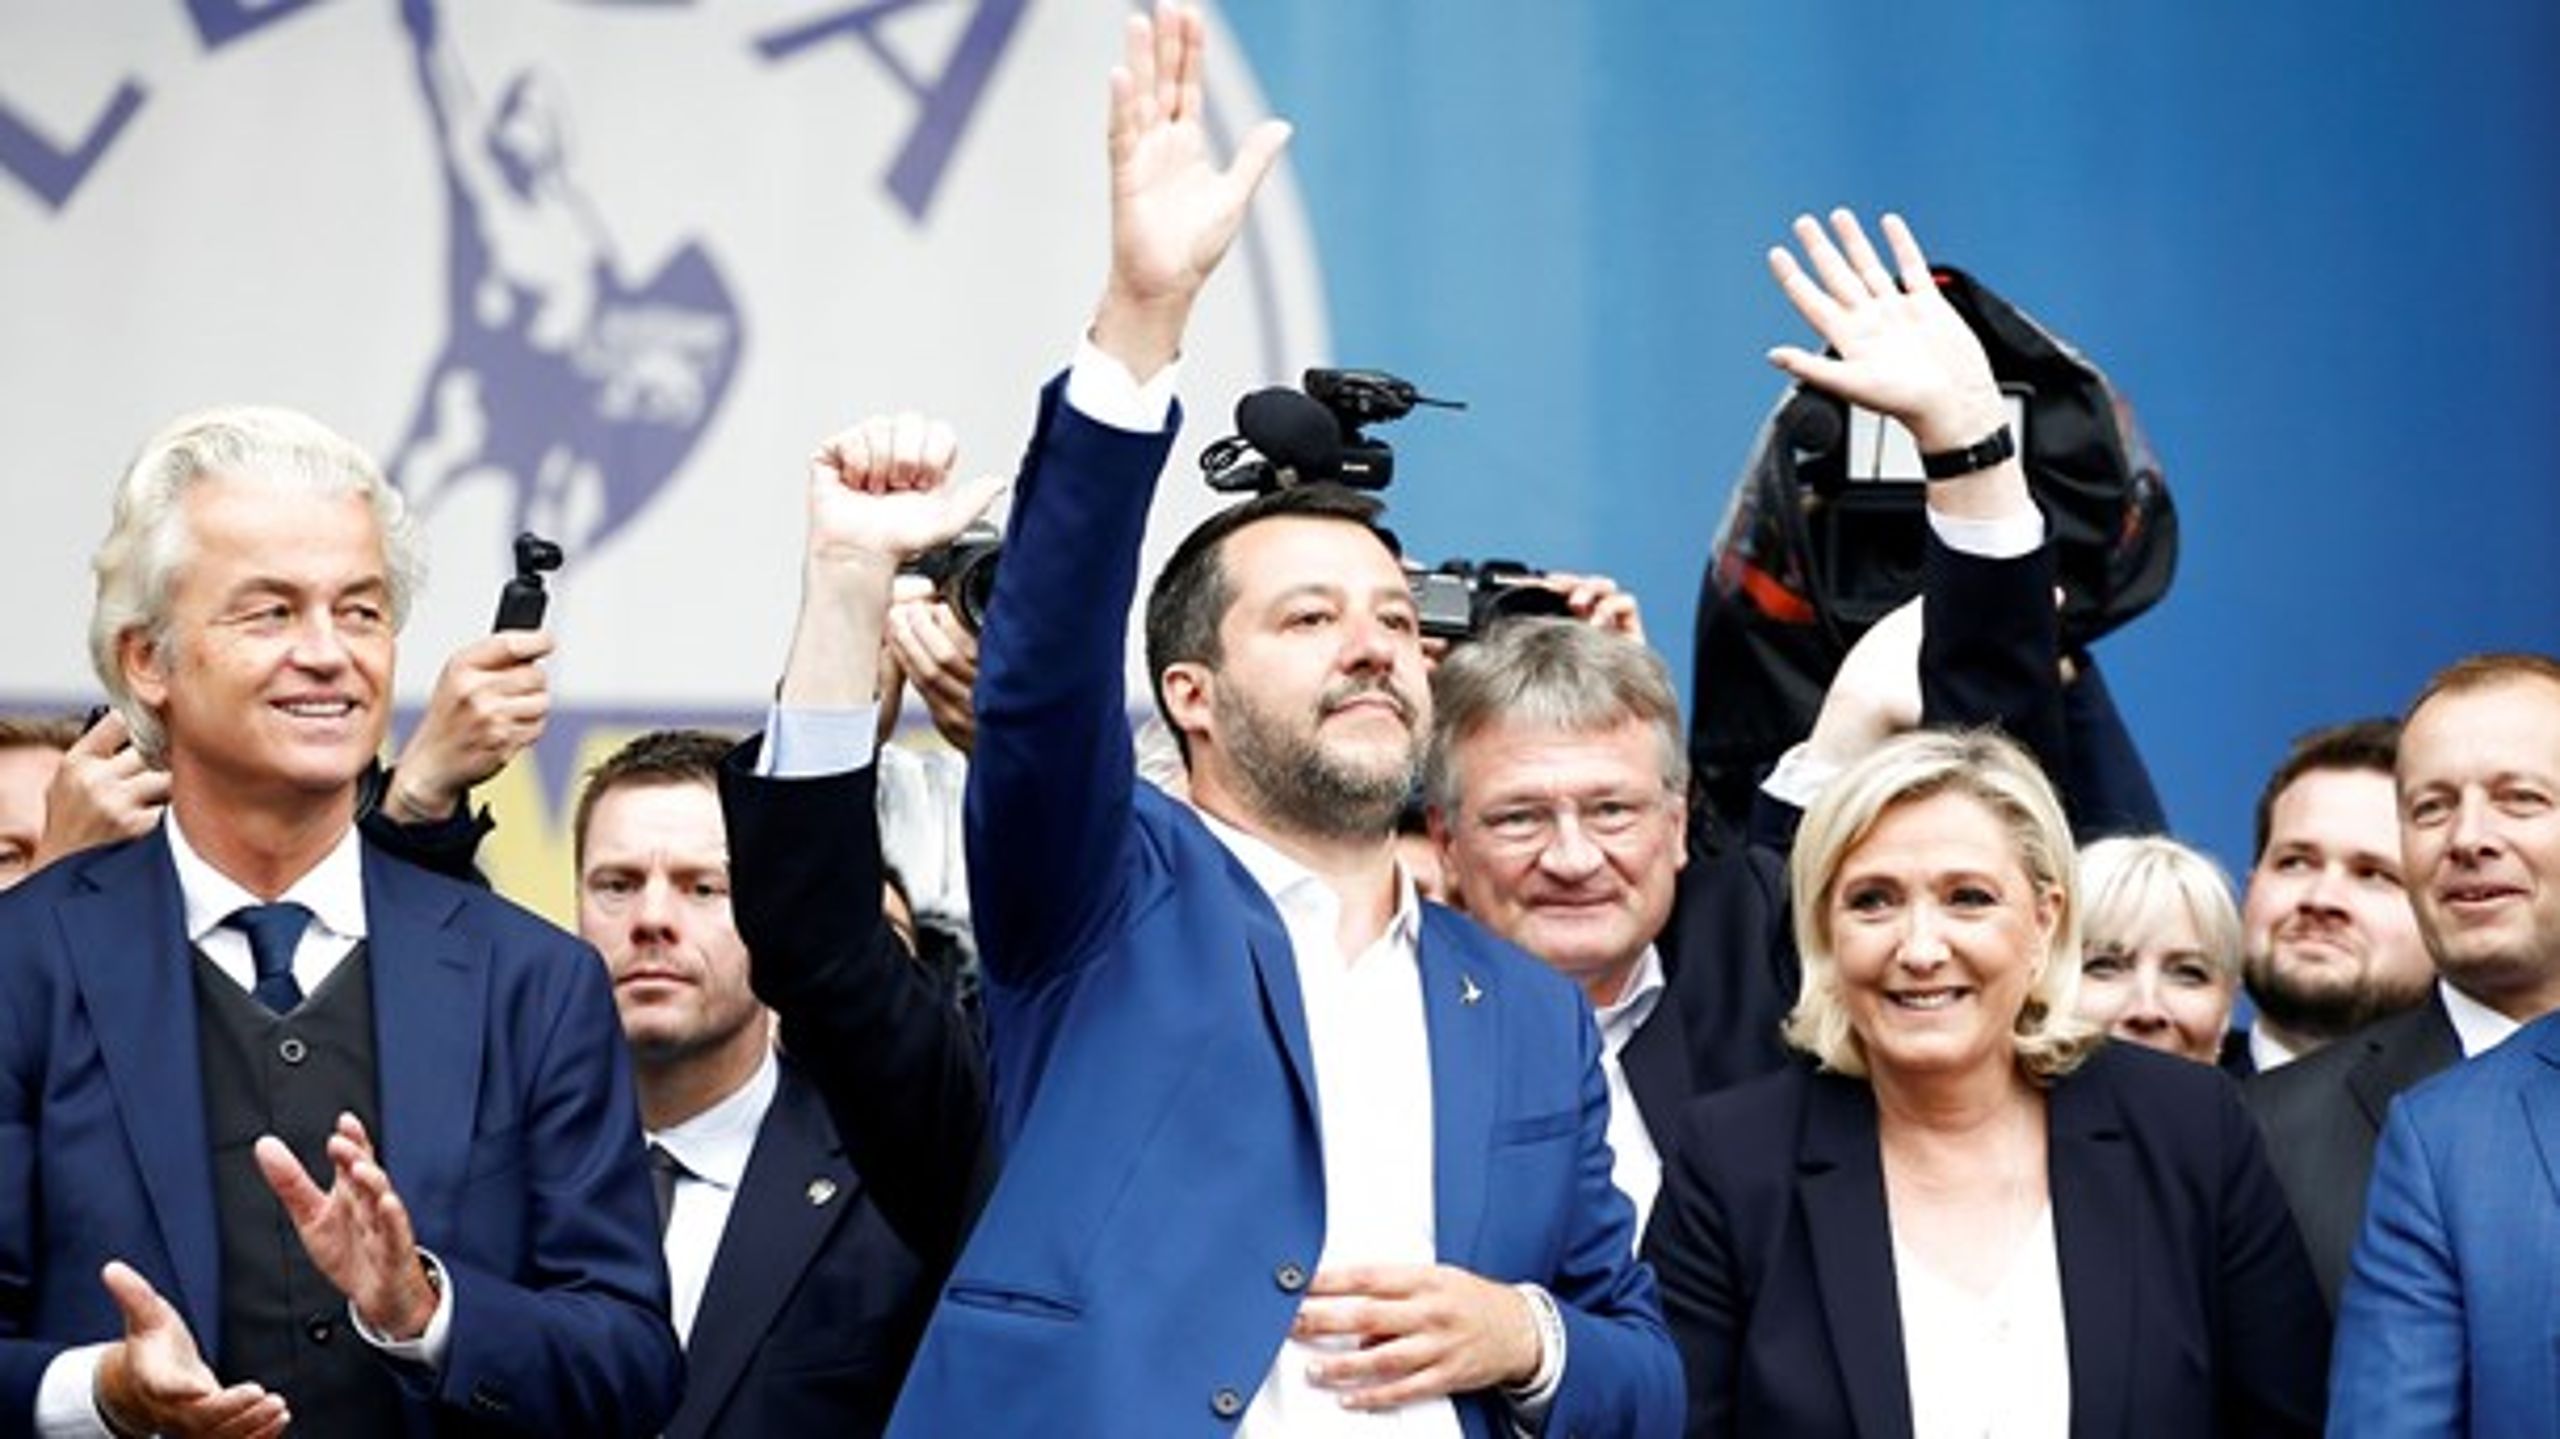 Matteo Salvini og Marine Le Pen fik begge flotte valgresultater, mens Geert Wilders' parti røg ud af Europa-Parlamentet ved det netop overståede valg. Til fælles har de et særligt forhold til Rusland.